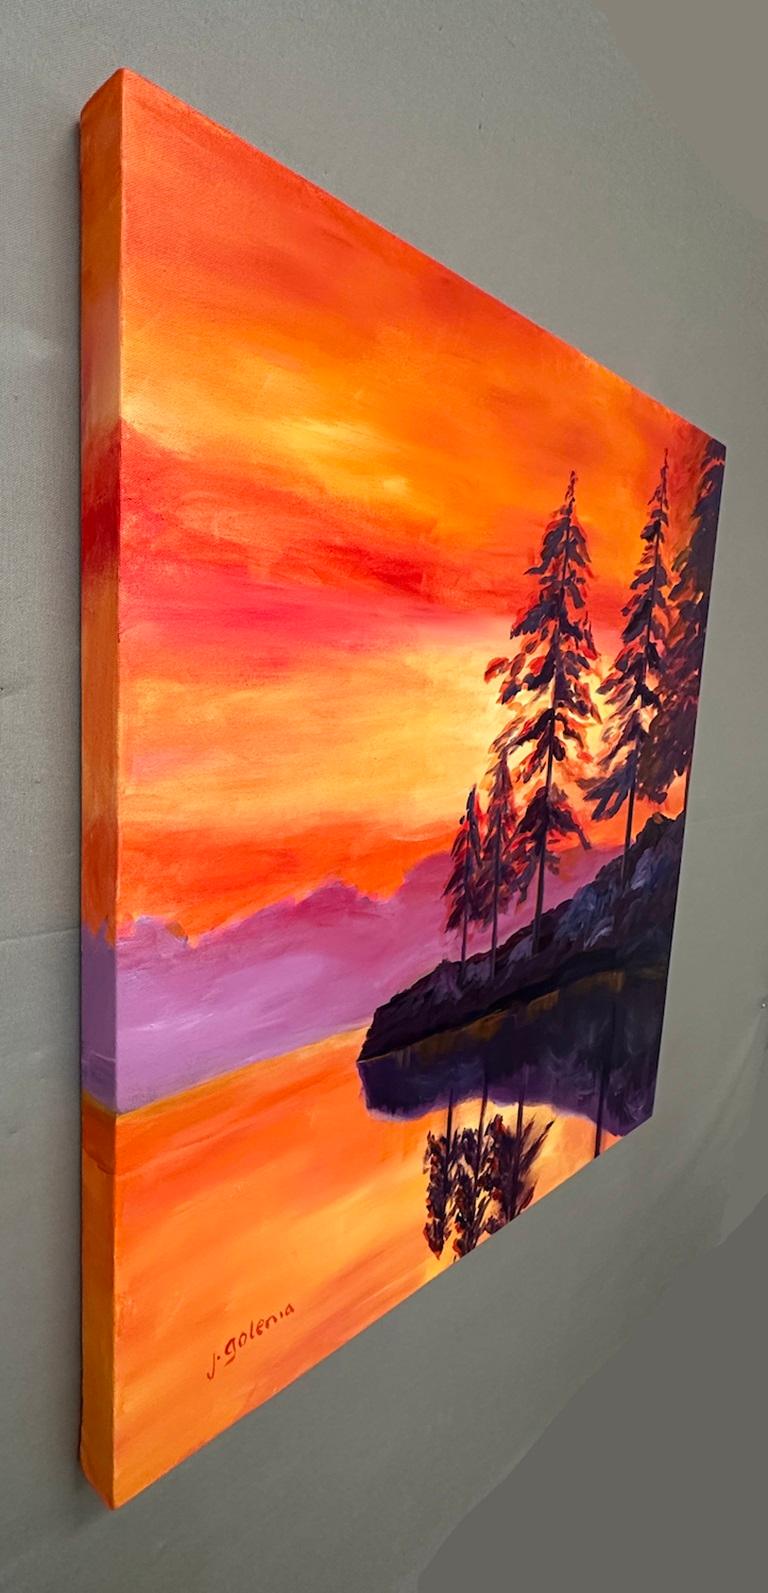 <p>Kommentare des Künstlers<br>Der Himmel leuchtet orange, seine leuchtenden Farben spiegeln sich auf dem See. Kiefern schmücken den Horizont mit ihren markanten Silhouetten. Während das ferne Ufer schwach leuchtet, bleibt der nahe Ausläufer im